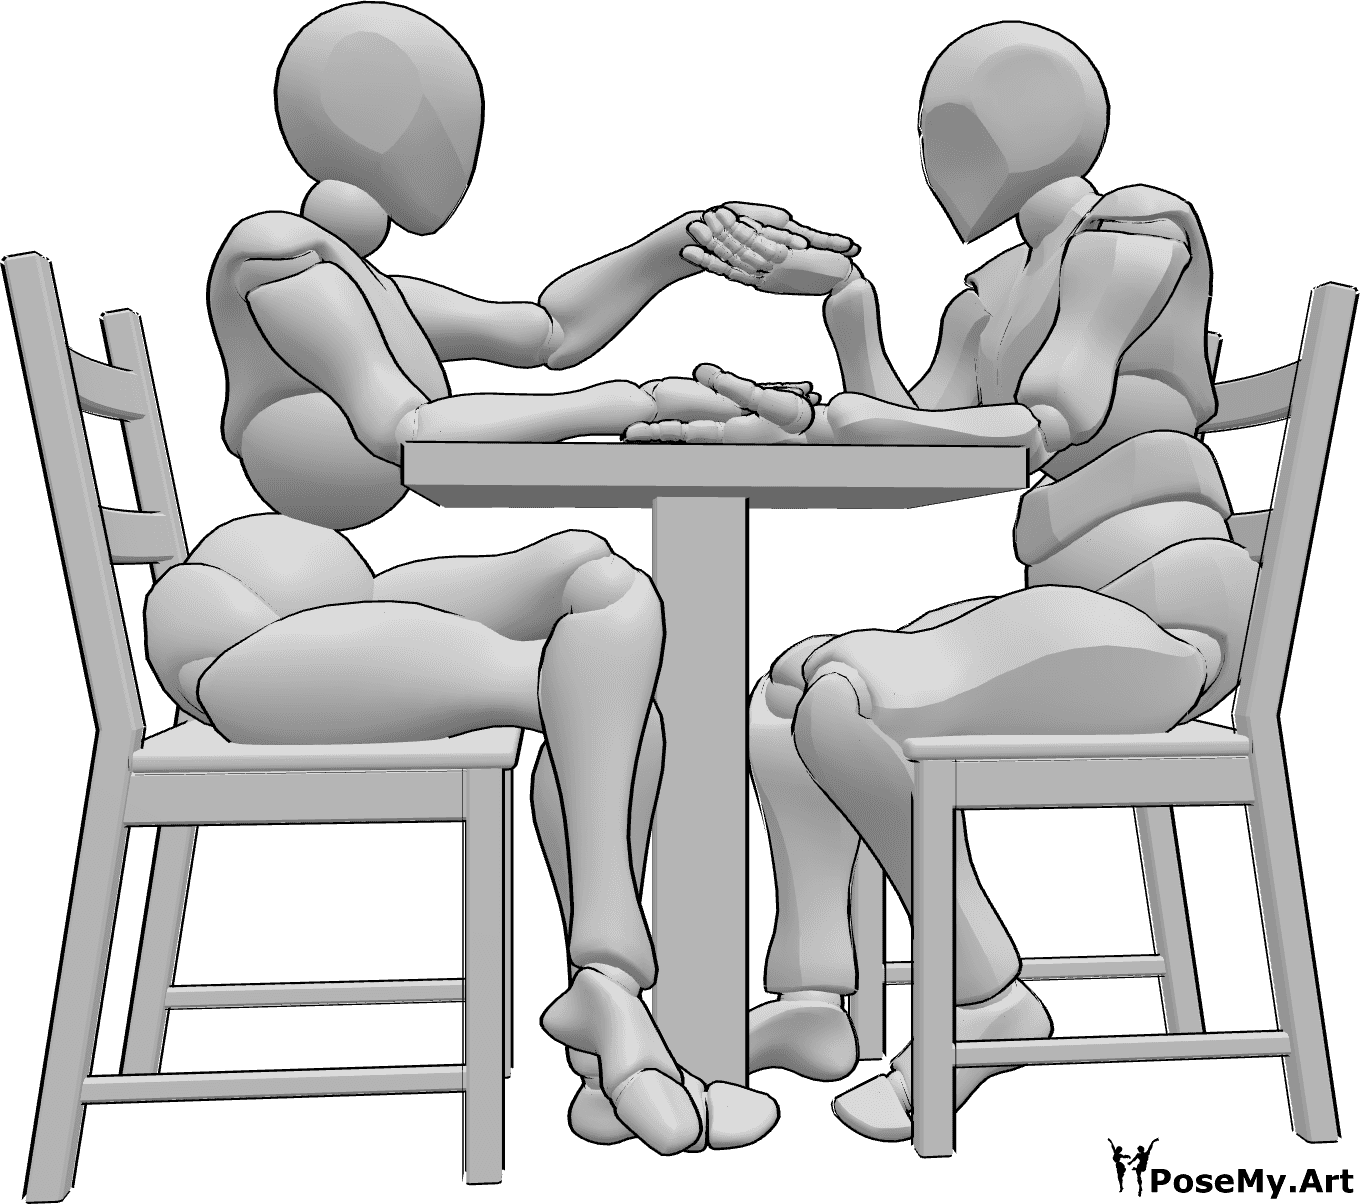 Referência de poses- Postura sentada de mãos dadas - Uma mulher e um homem estão sentados à mesa e de mãos dadas, o homem está prestes a beijar a mão esquerda da mulher